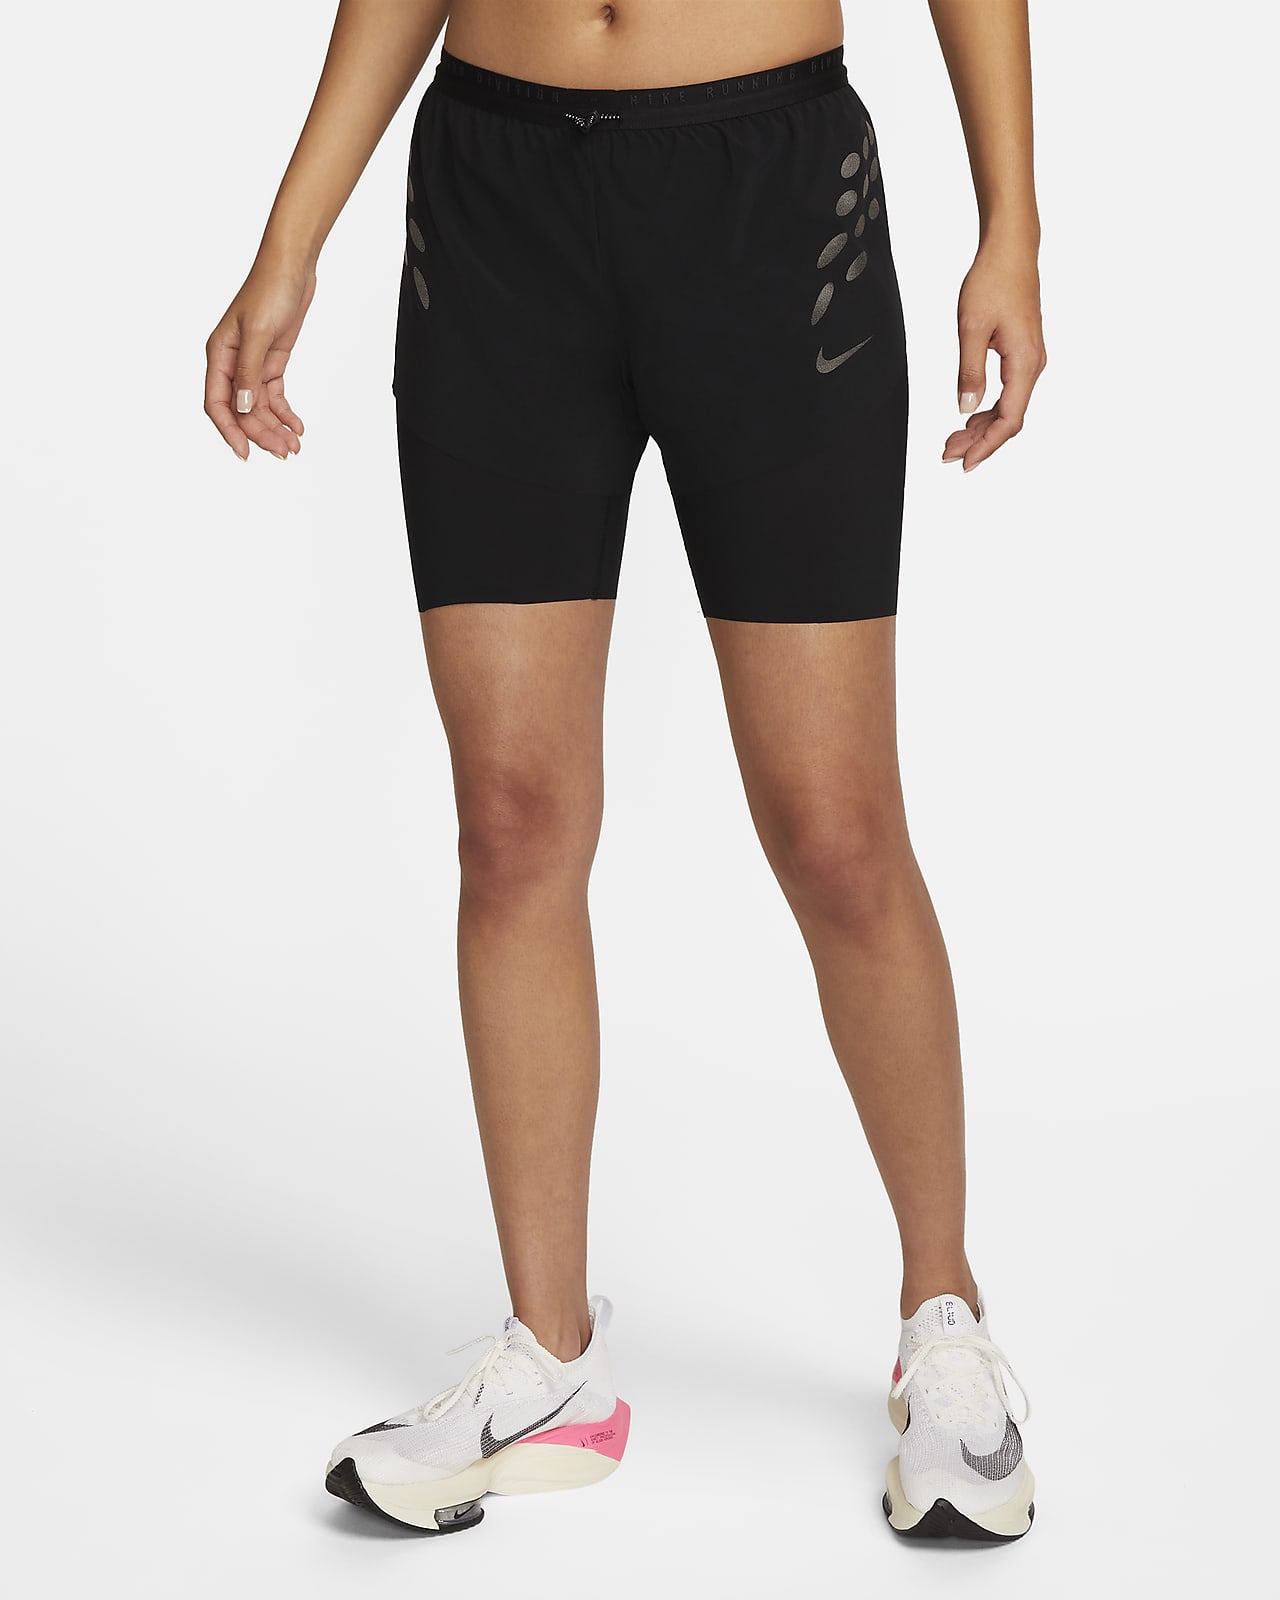 กางเกงวิ่งขาสั้น 2-In-1 ผู้หญิง Nike Dri-FIT Run Division